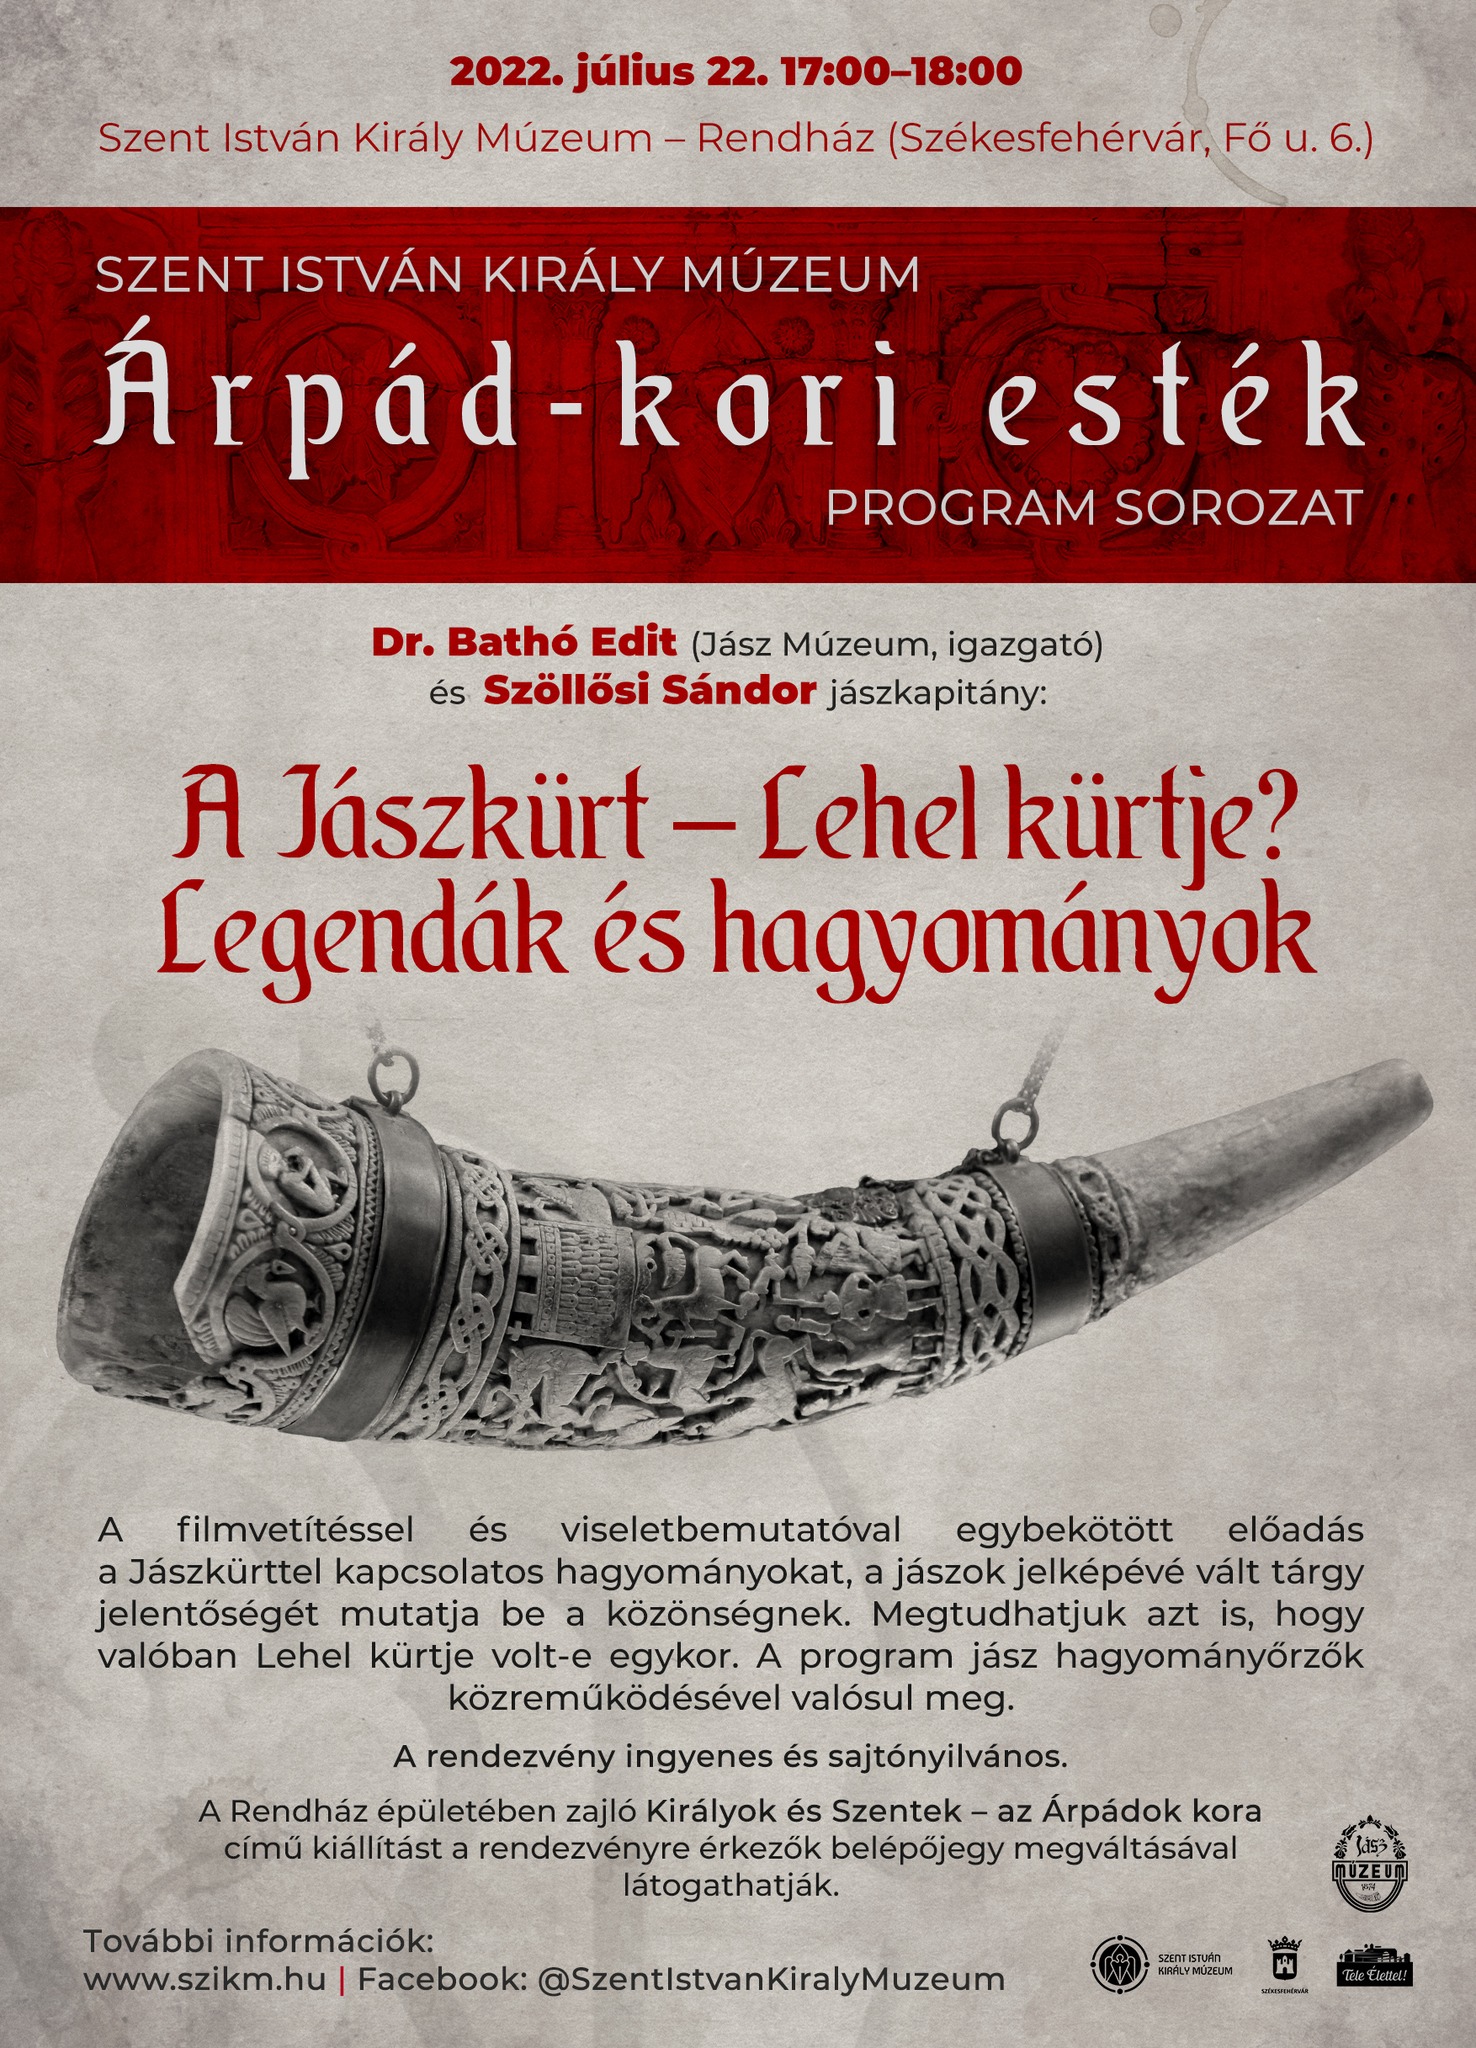 Árpád-kori esték a Szent IStván Király Múzeumban - A Jászkürt Lehel kürtje?